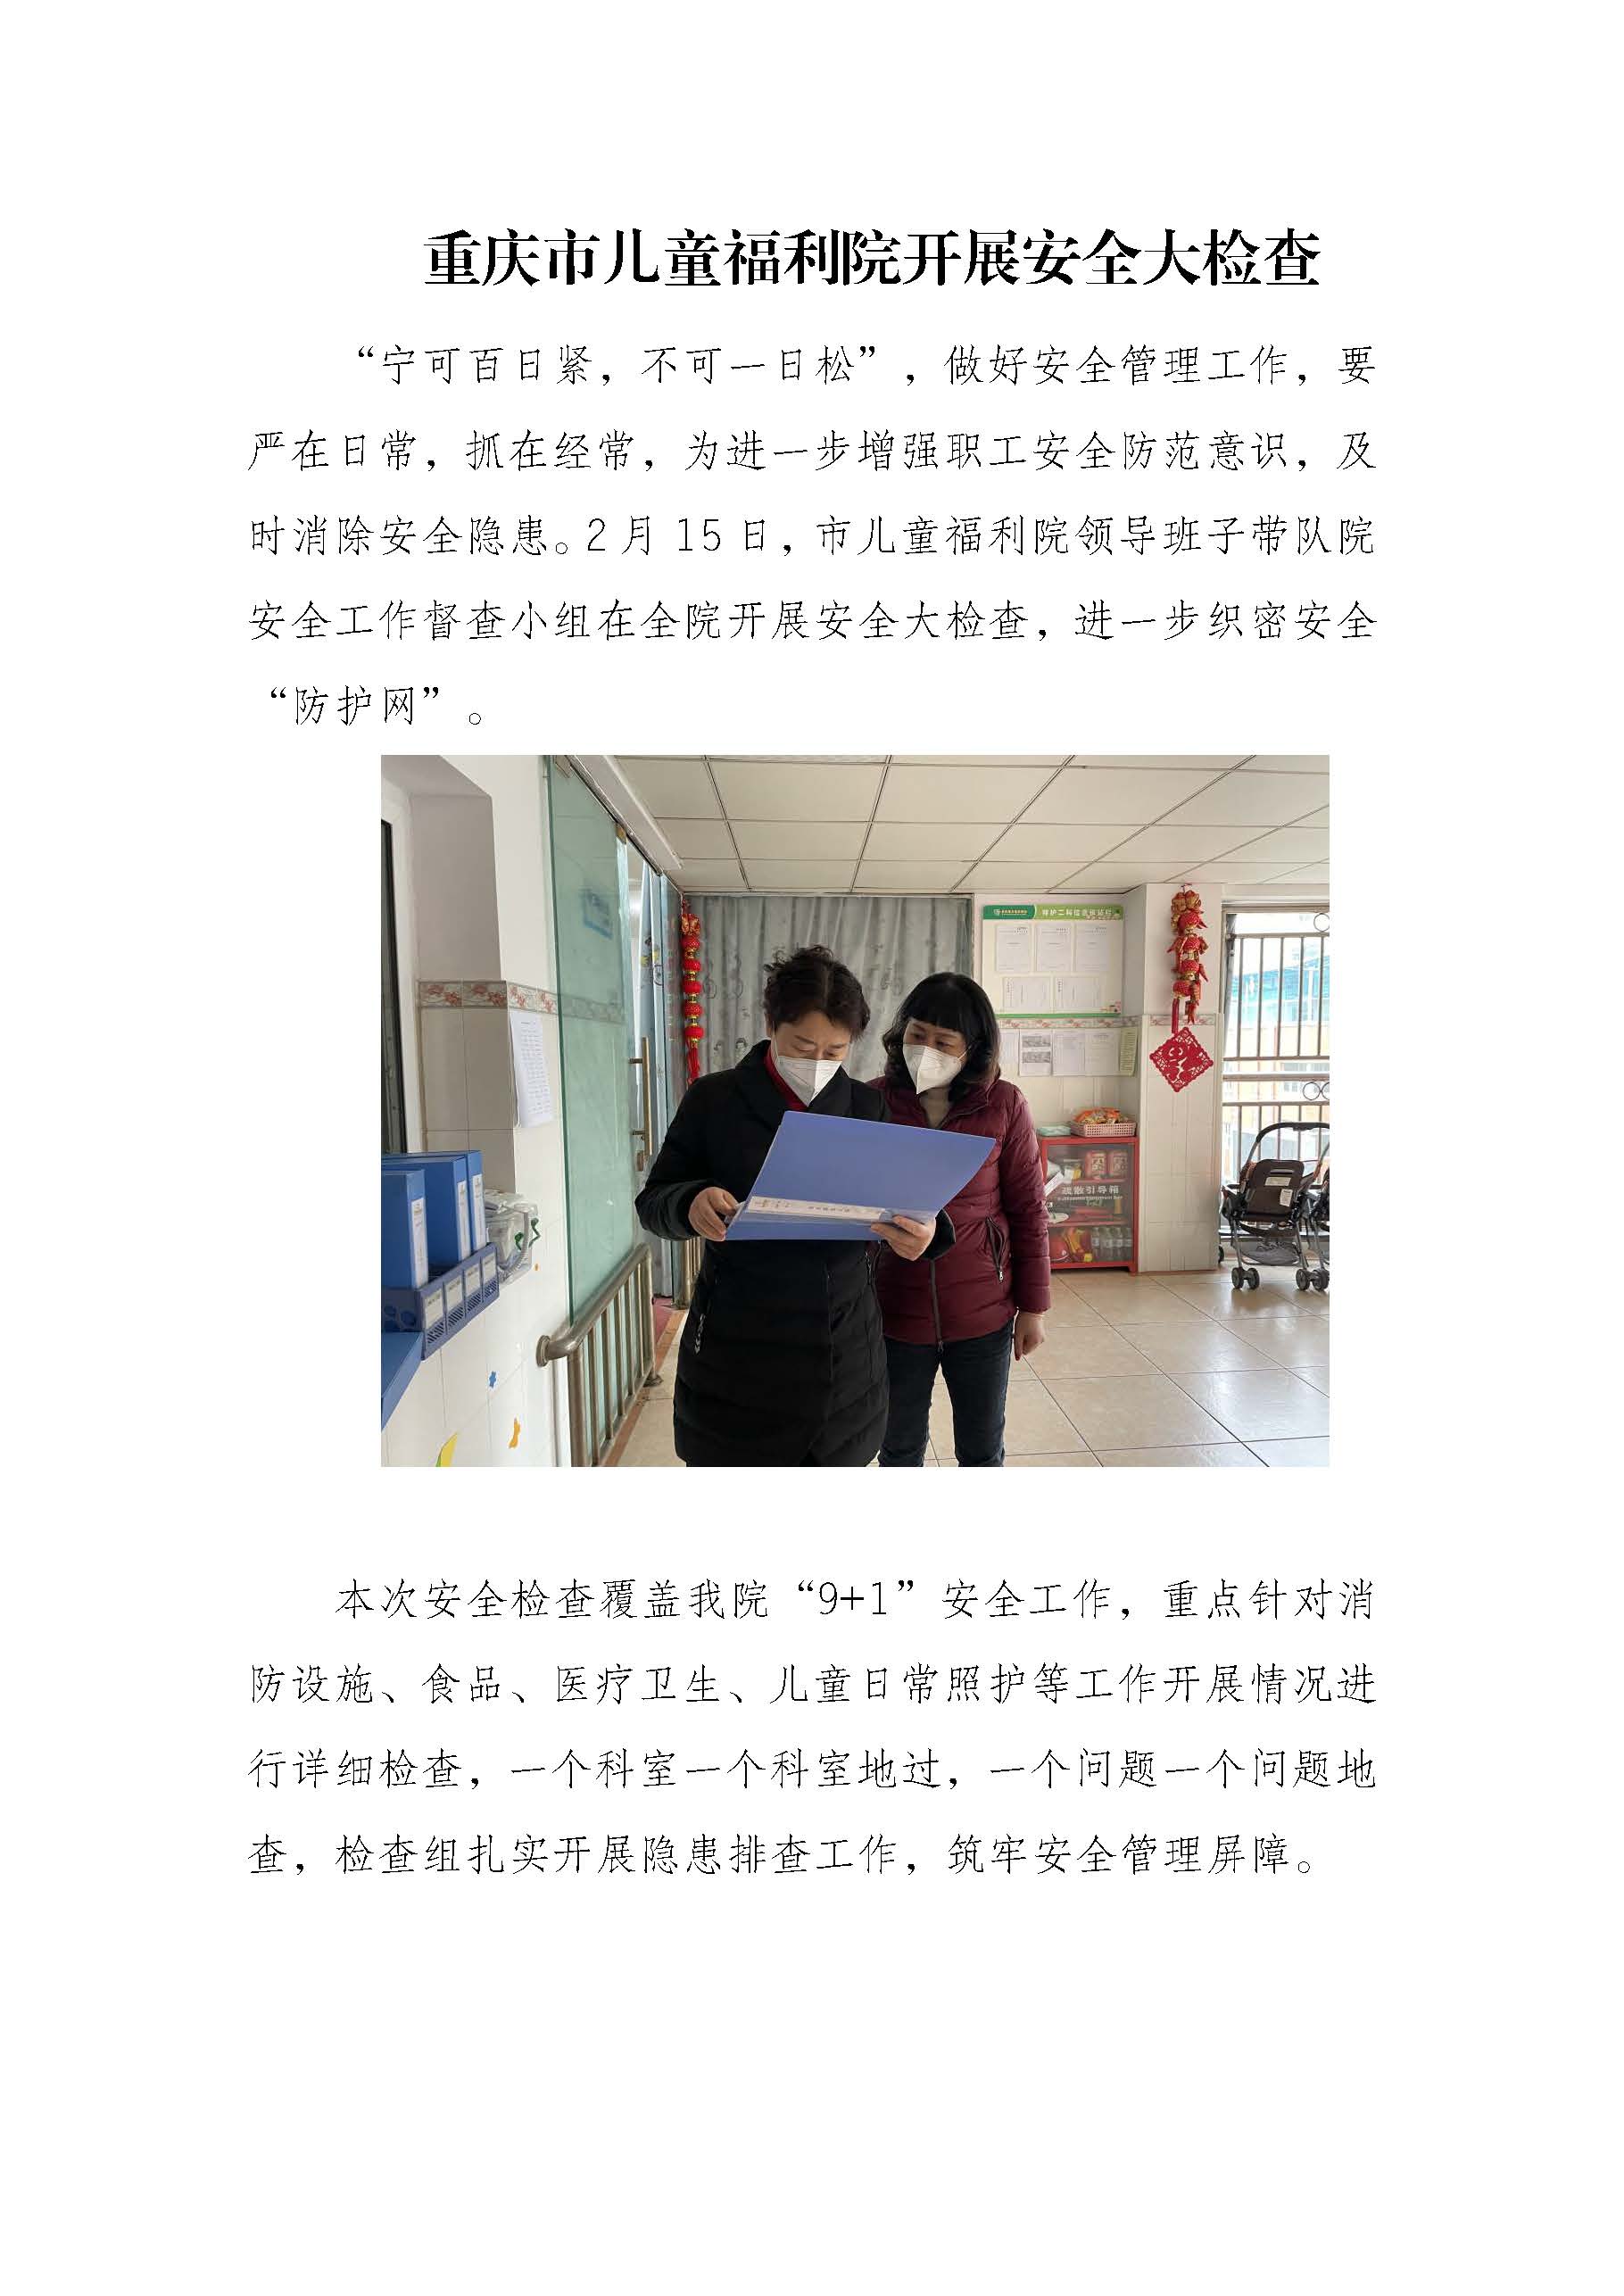 2.15 重庆市儿童福利院开展安全大检查_页面_1.jpg